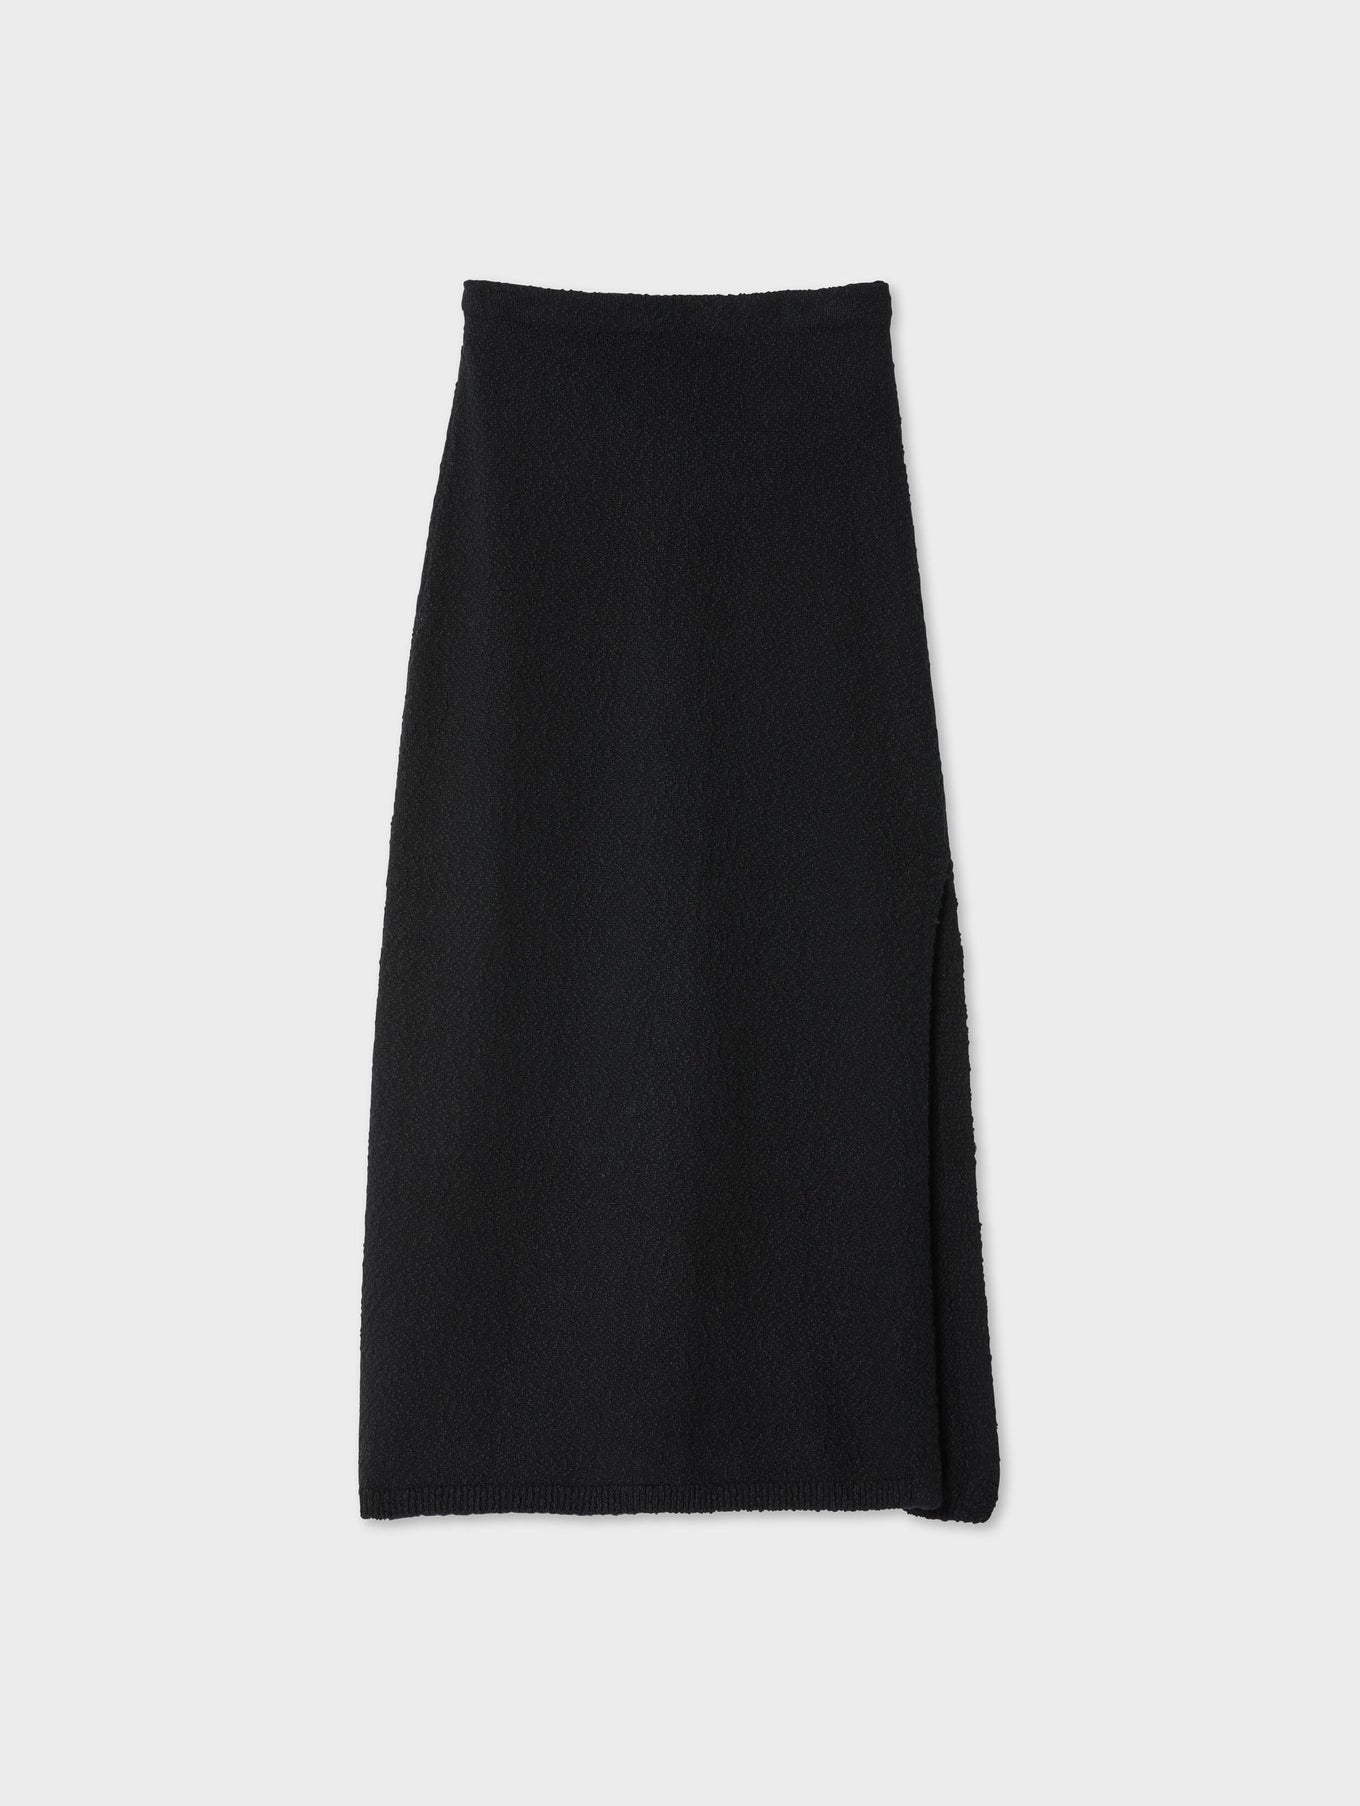 Cotton Slub Side Slit Skirt